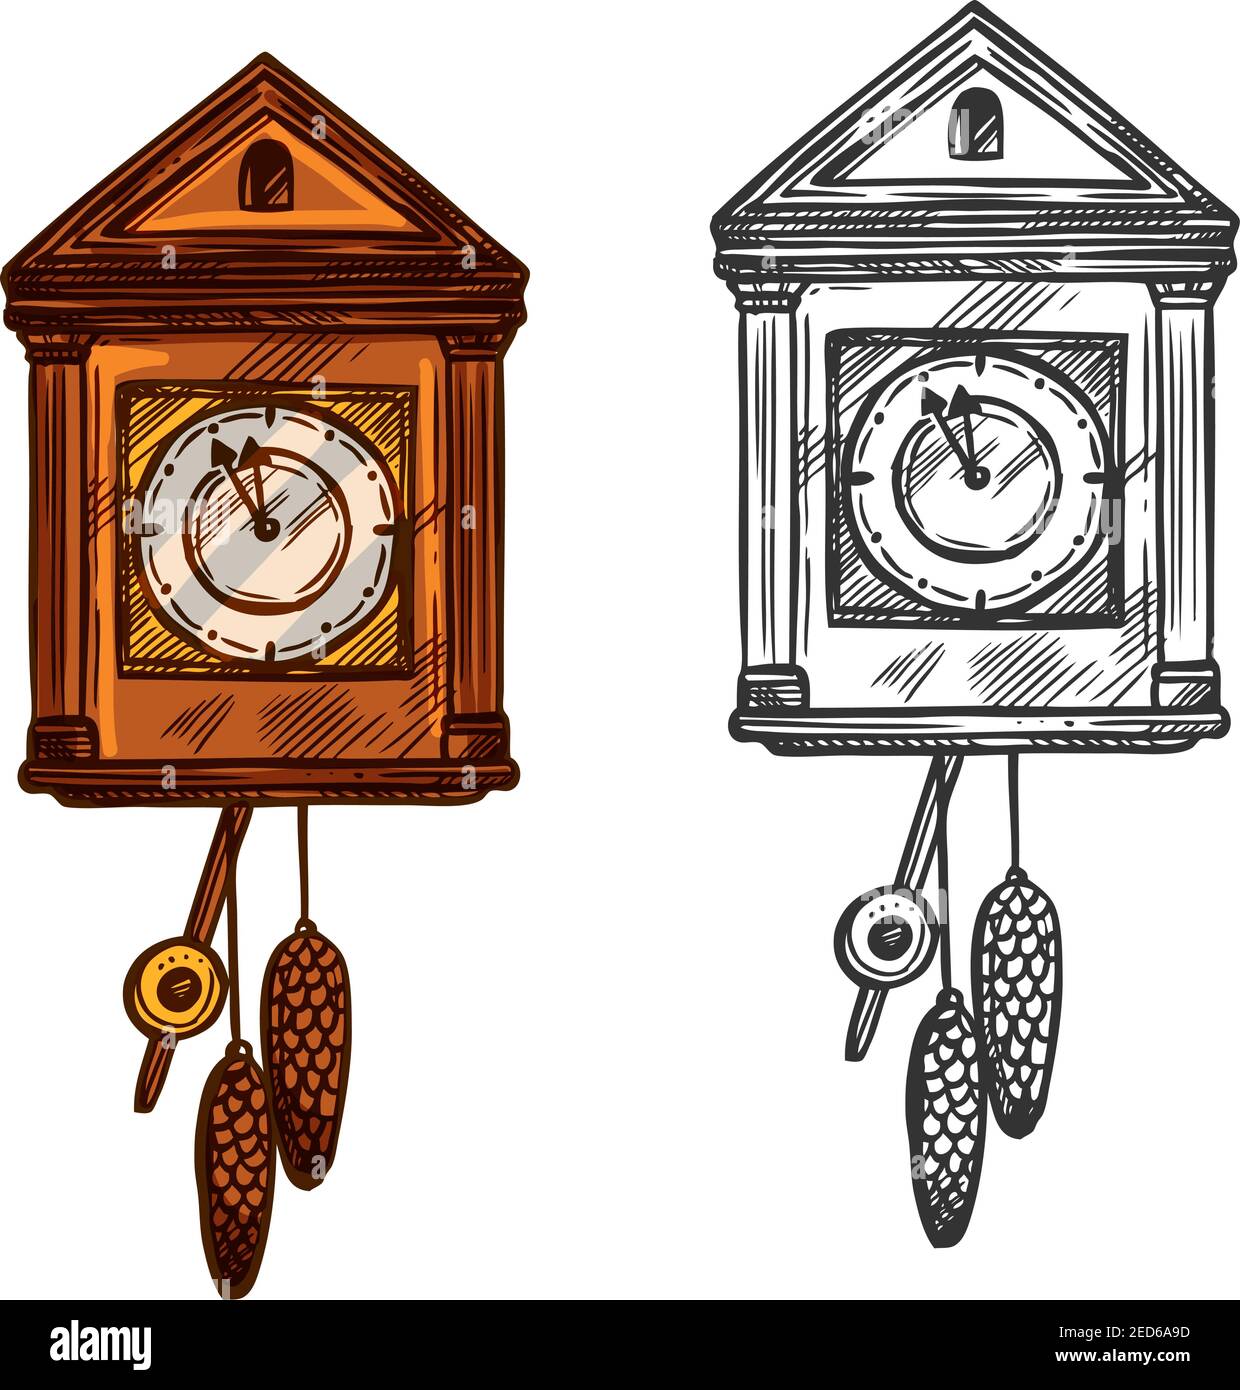 Horloge du nouvel an. Vector isolé esquisse cuckoo Wall horloge avec pendule et cônes de sapin. Flèches en minutes avant minuit. Symbole rétro pour le christ Illustration de Vecteur